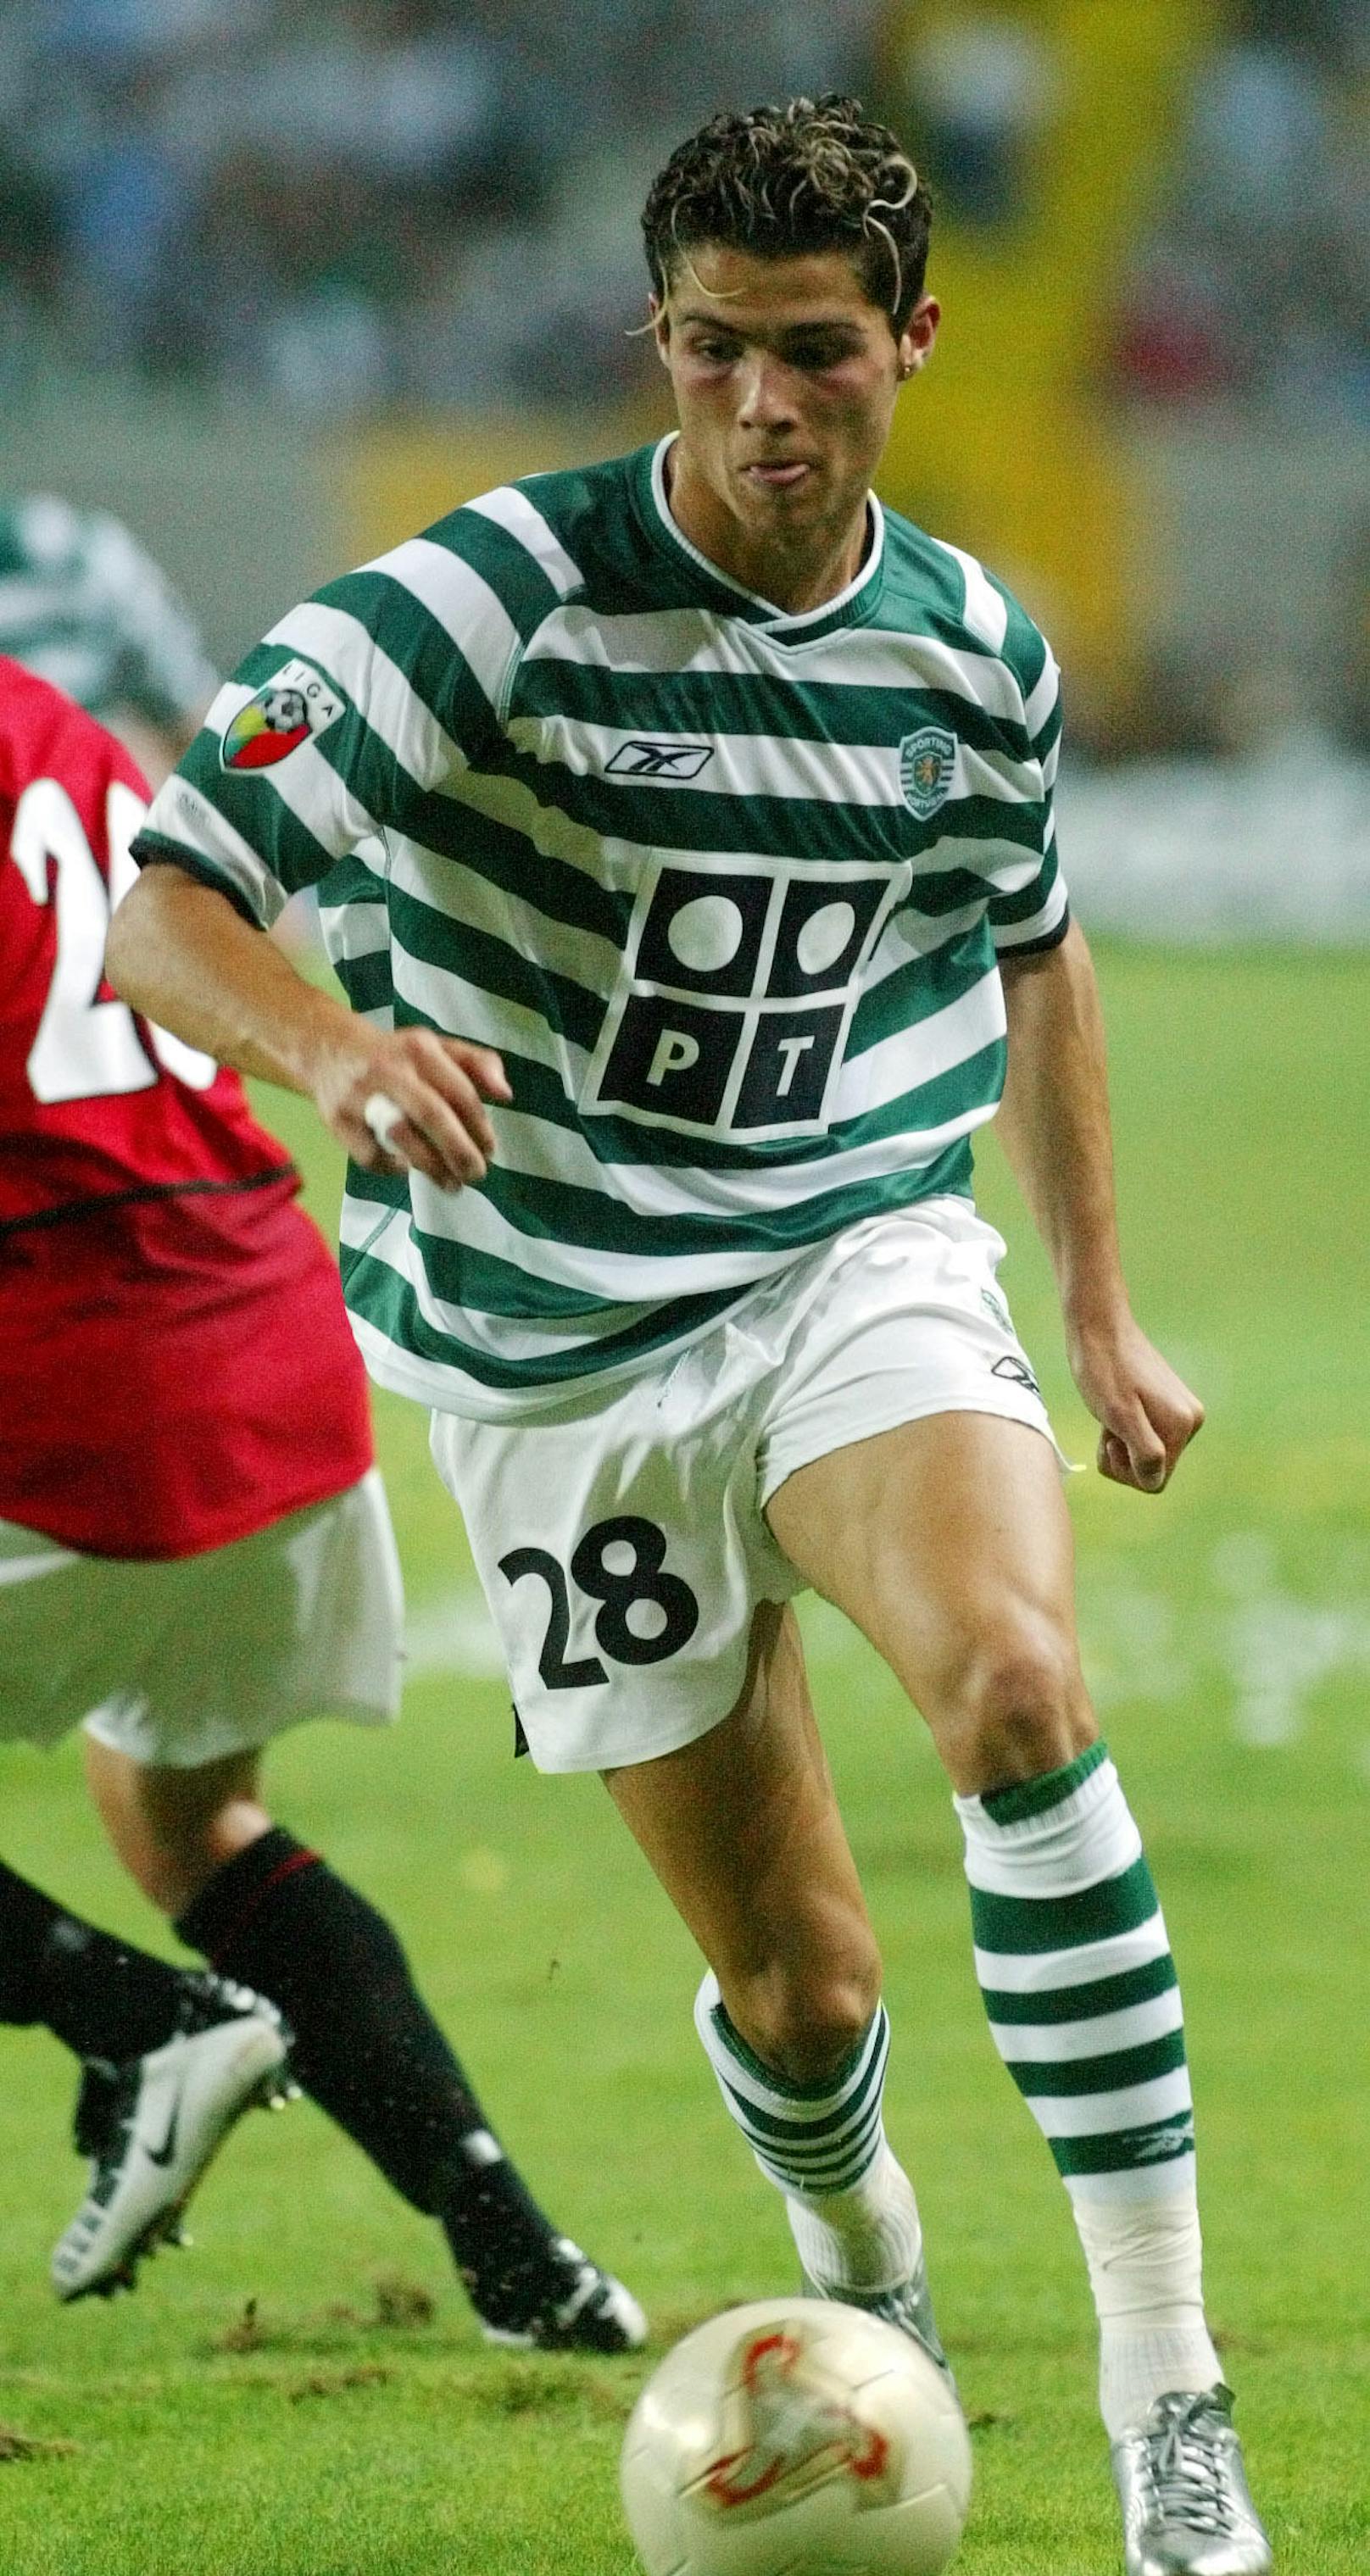 2002 debütierte Ronaldo mit 17 Jahren für die Kampfmannschaft von Sporting Lissabon und konnte in seinem aller ersten Match sogar ein Tor erzielen. Schnell wurden Scouts aus aller Welt auf ihn aufmerksam.